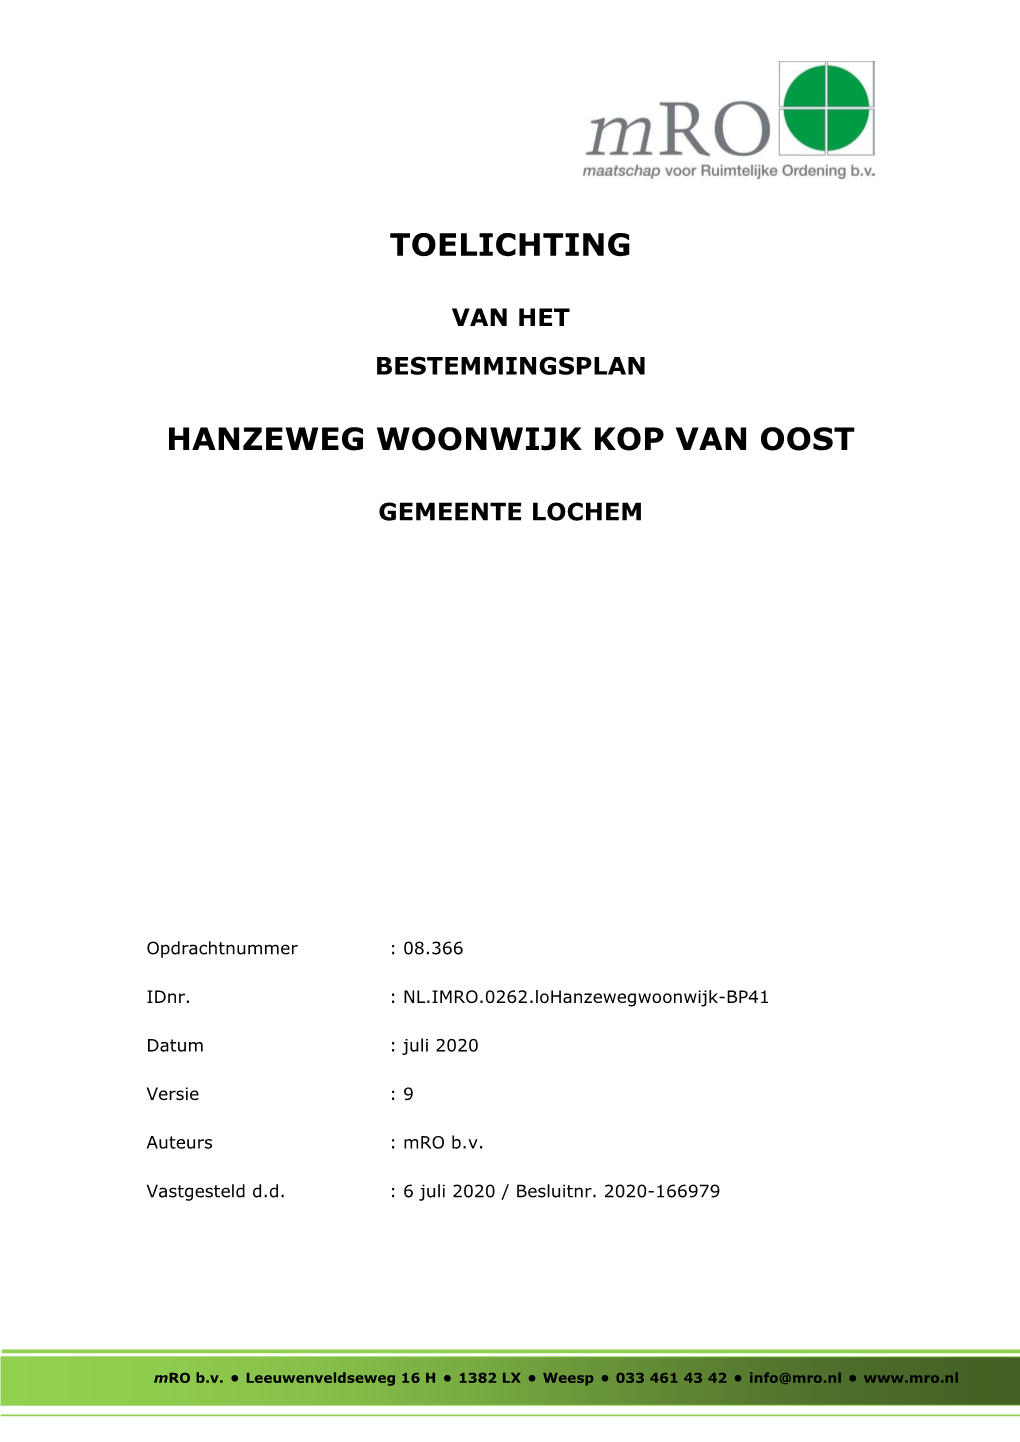 Hanzeweg Woonwijk Kop Van Oost